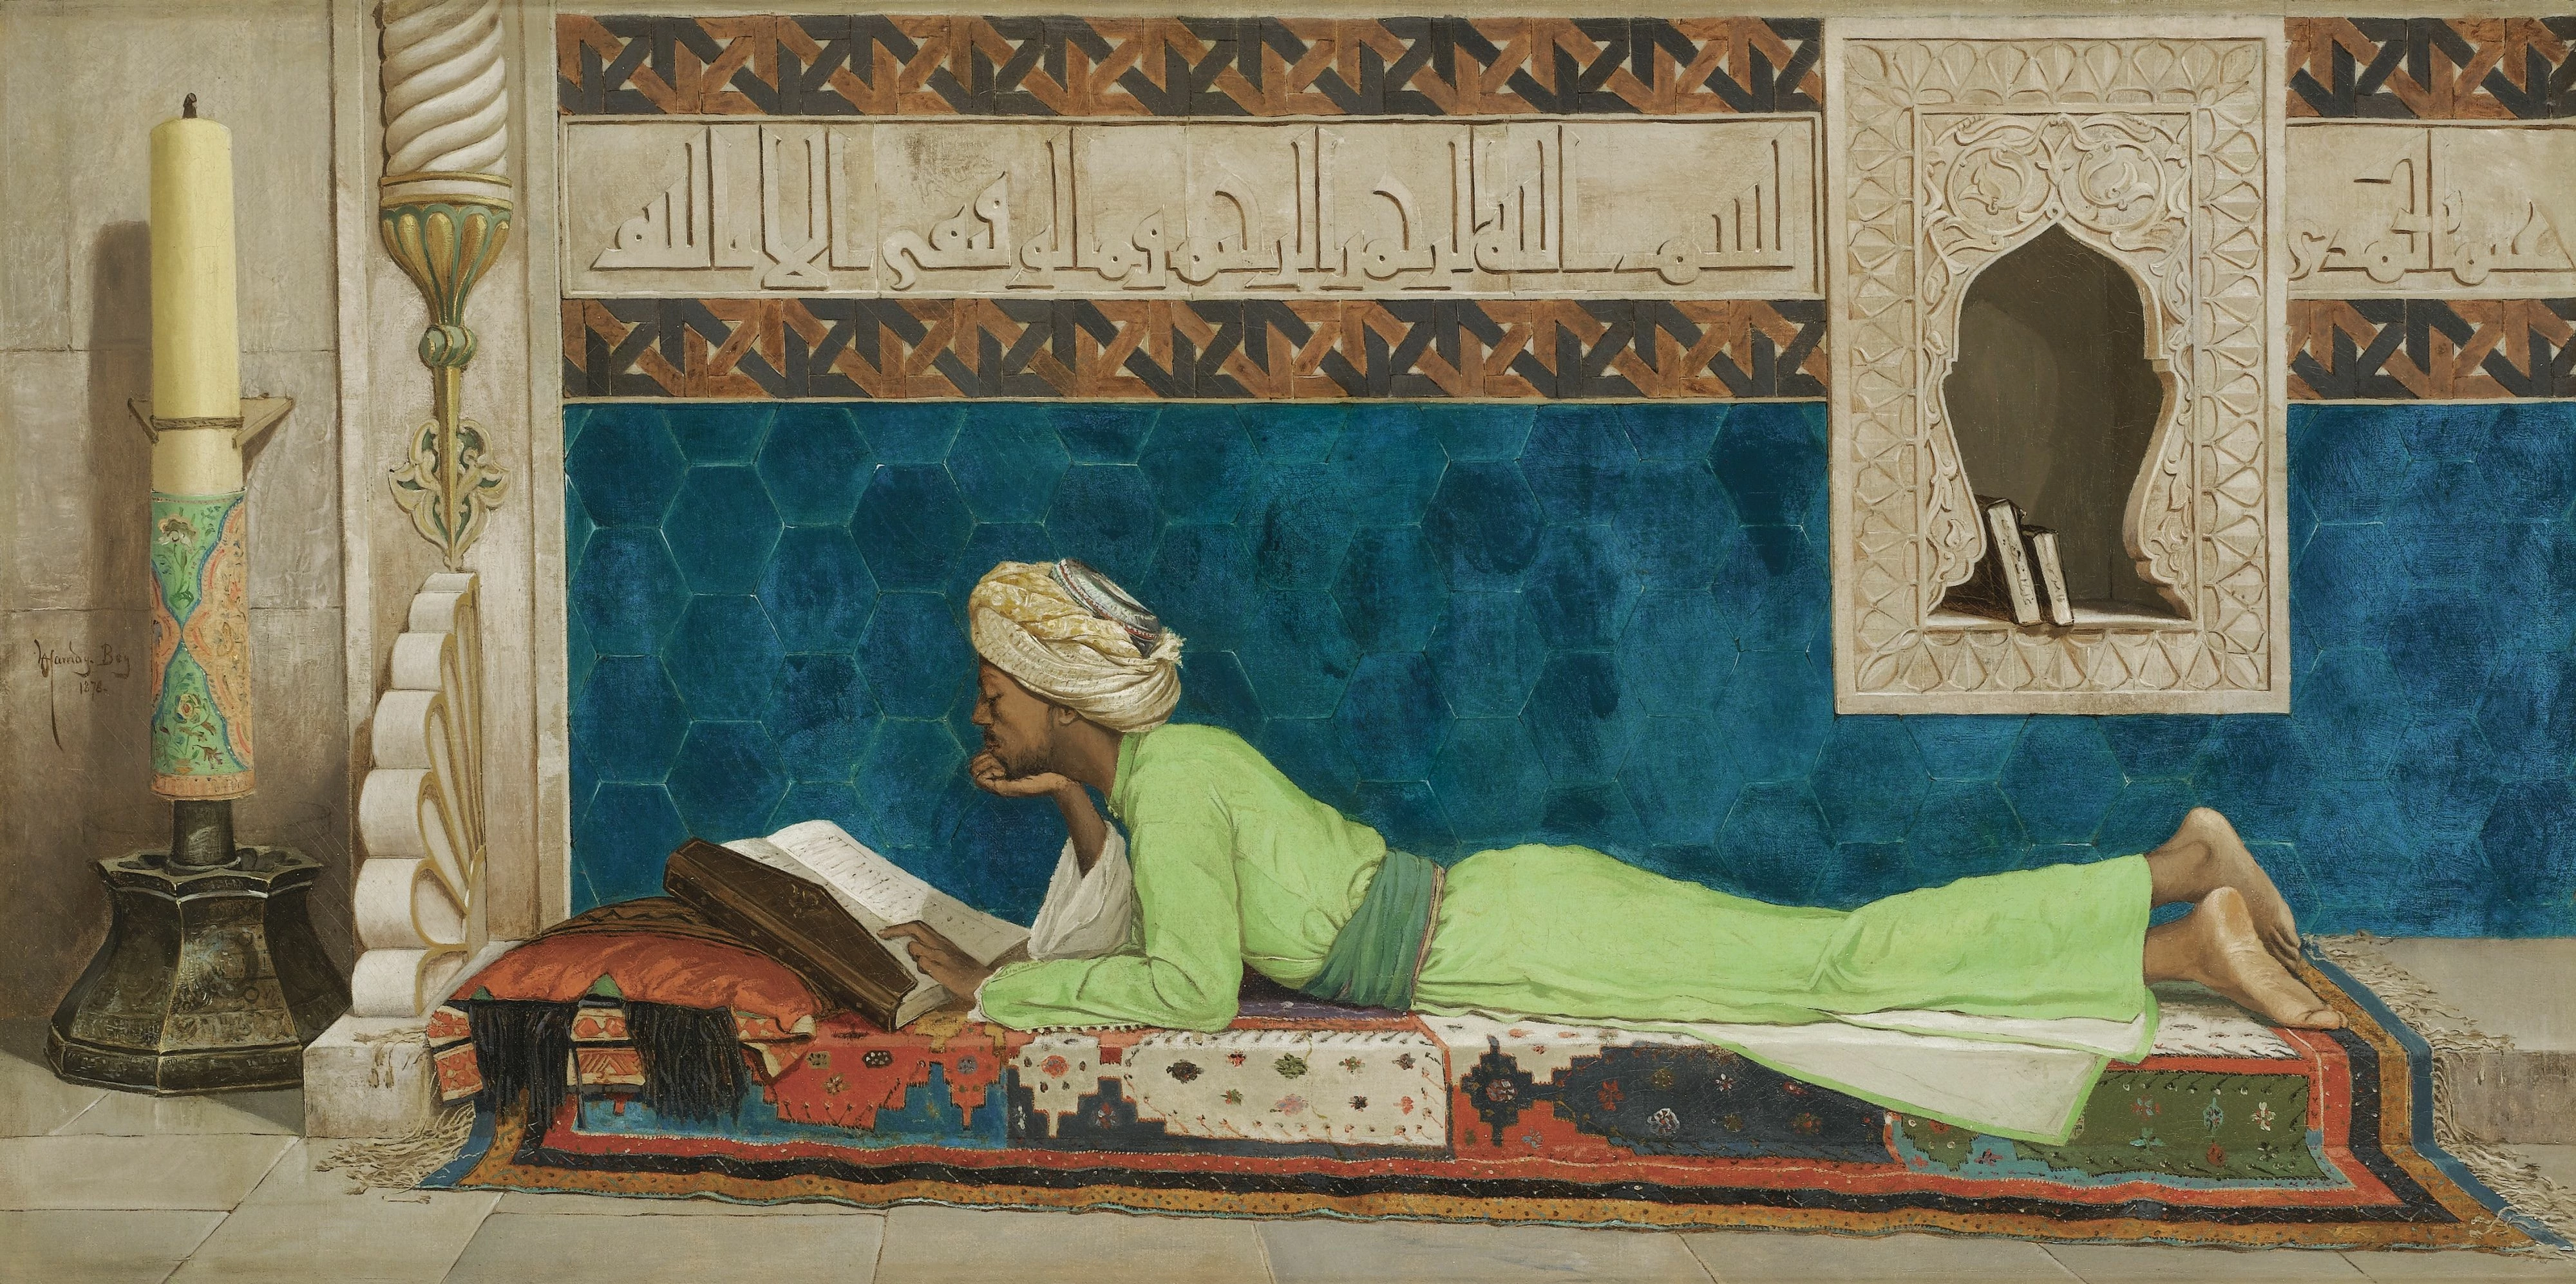 Scholar, Osman Hamdi Bey